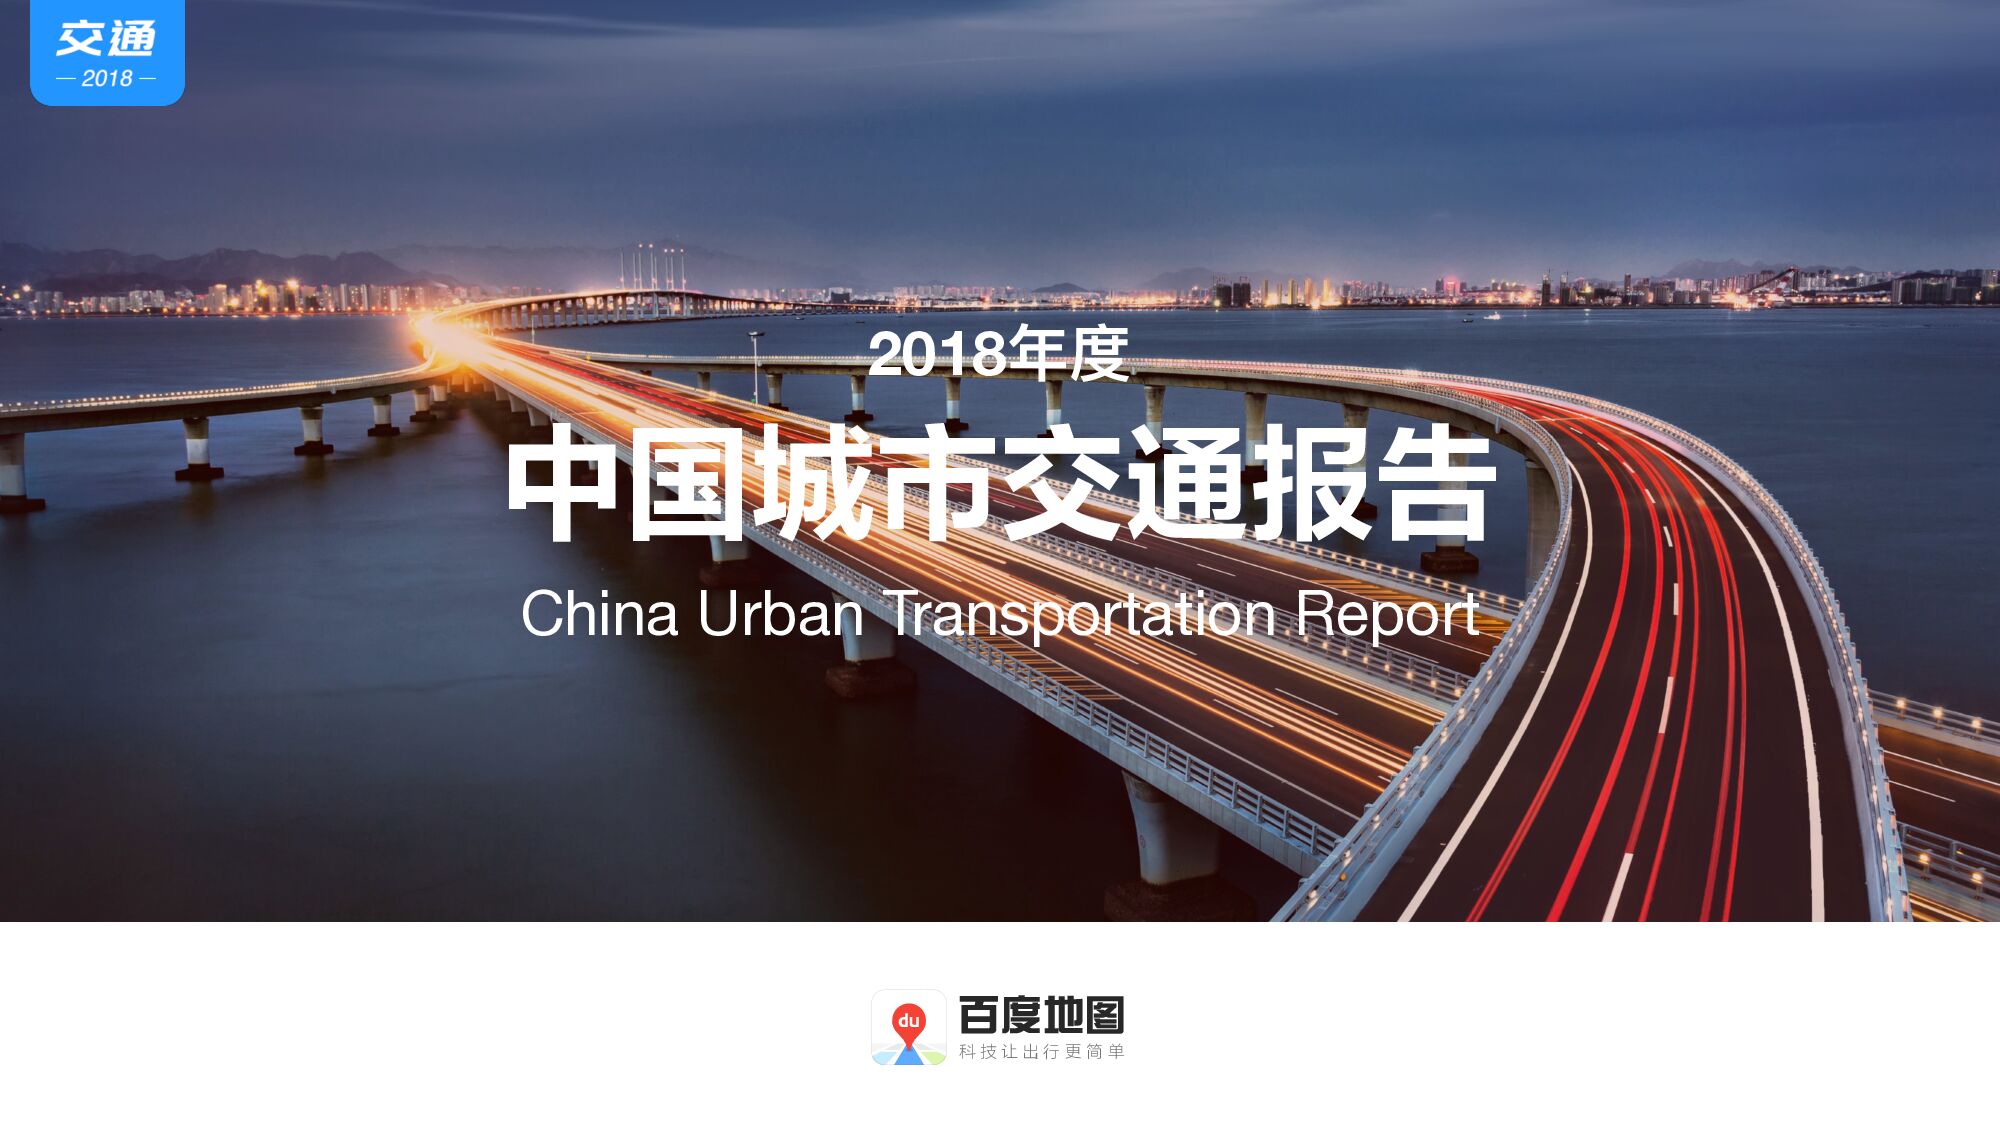 2018年度中国城市交通报告